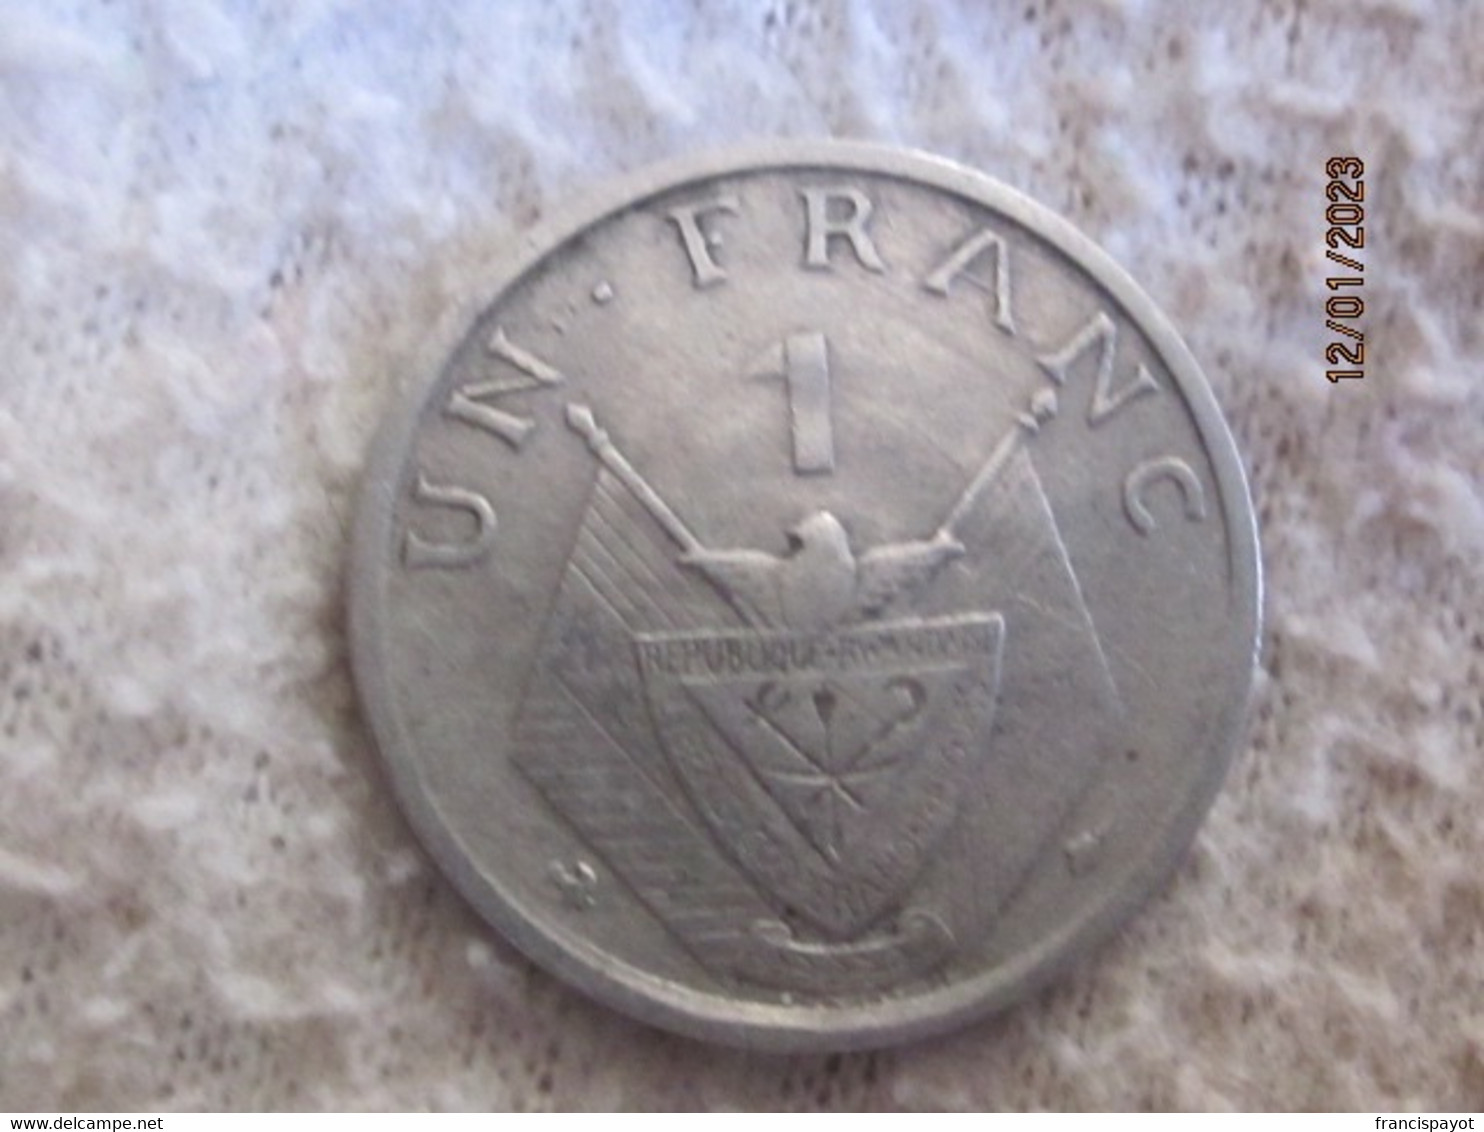 Rwanda: 1 Franc 1964 - Rwanda